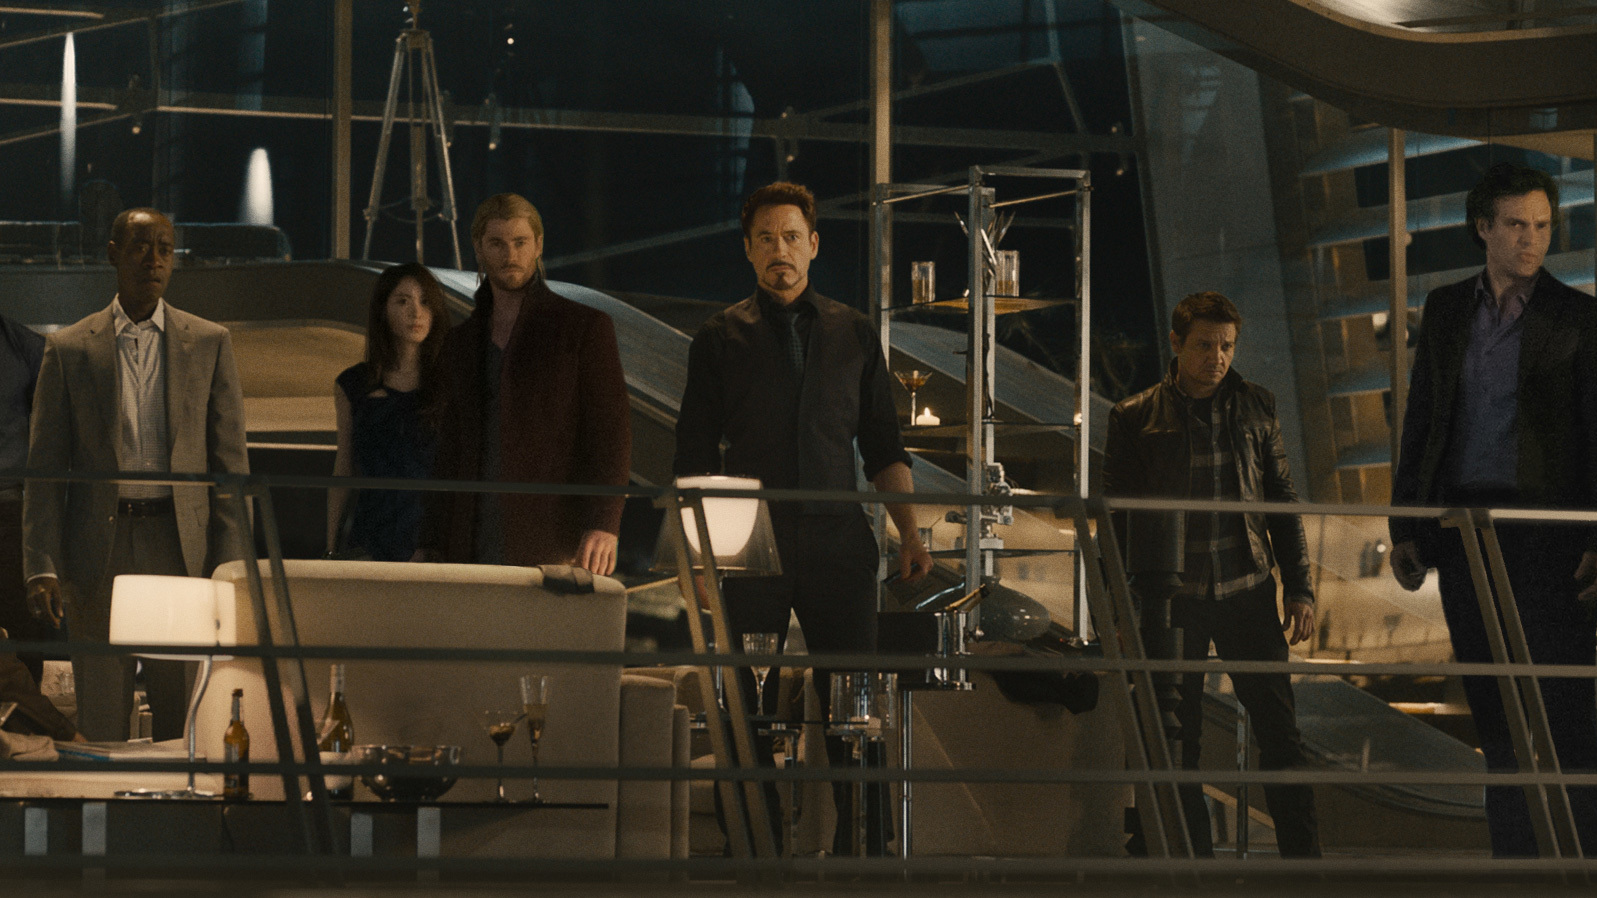 Team verzamelt zich op foto 'Avengers: Age of Ultron'